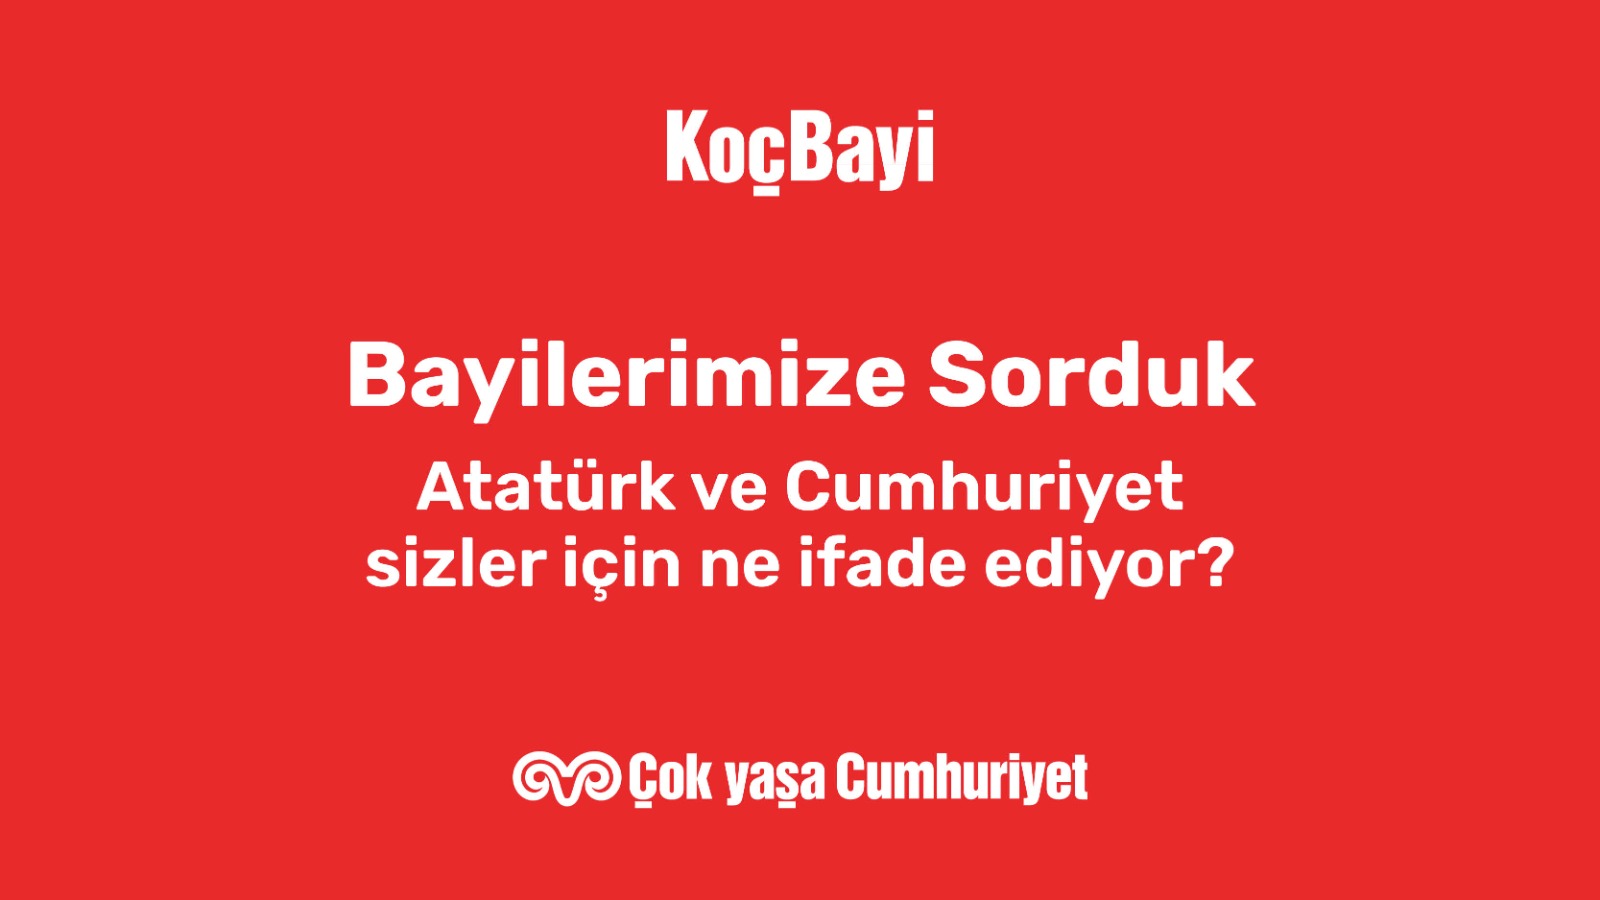 Bayilerimize sorduk: Atatürk ve Cumhuriyet sizin için ne anlam ifade ediyor? - 3